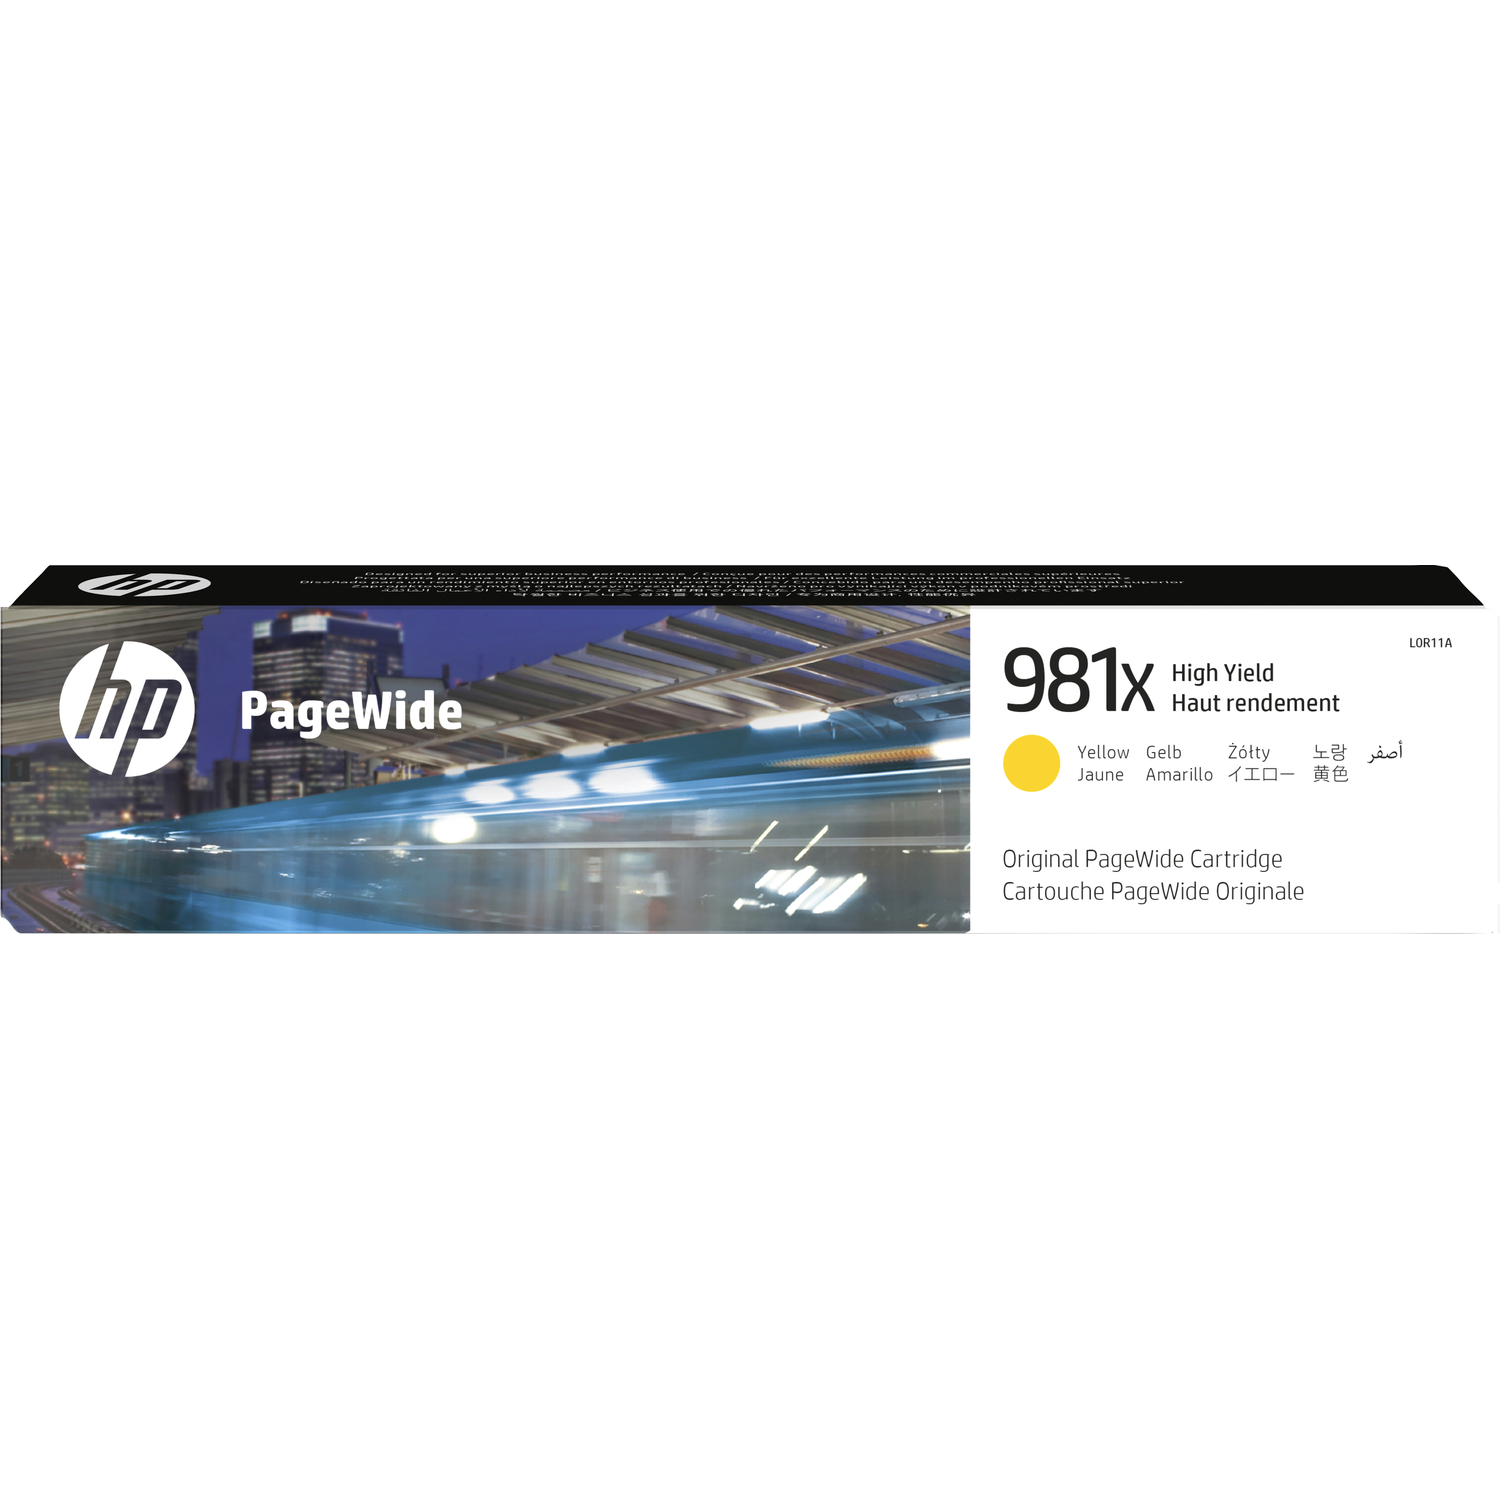  HP Inc. 981, L0R11A